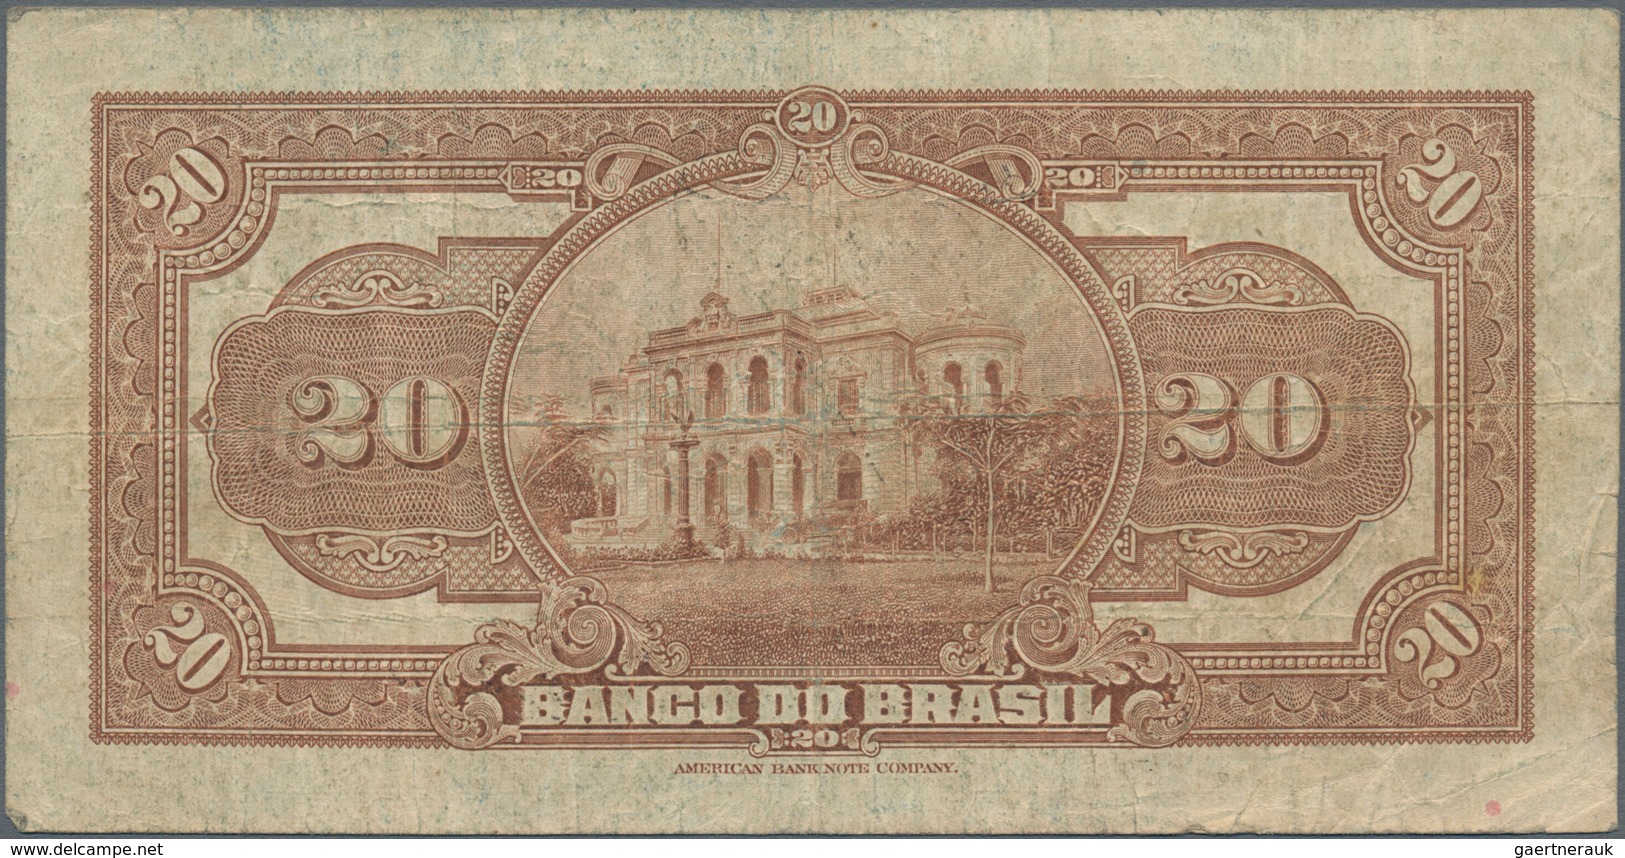 Brazil / Brasilien: Nice Group With 3 Banknotes Comprising República Dos Estados Unidos Do Brasil 5 - Brésil